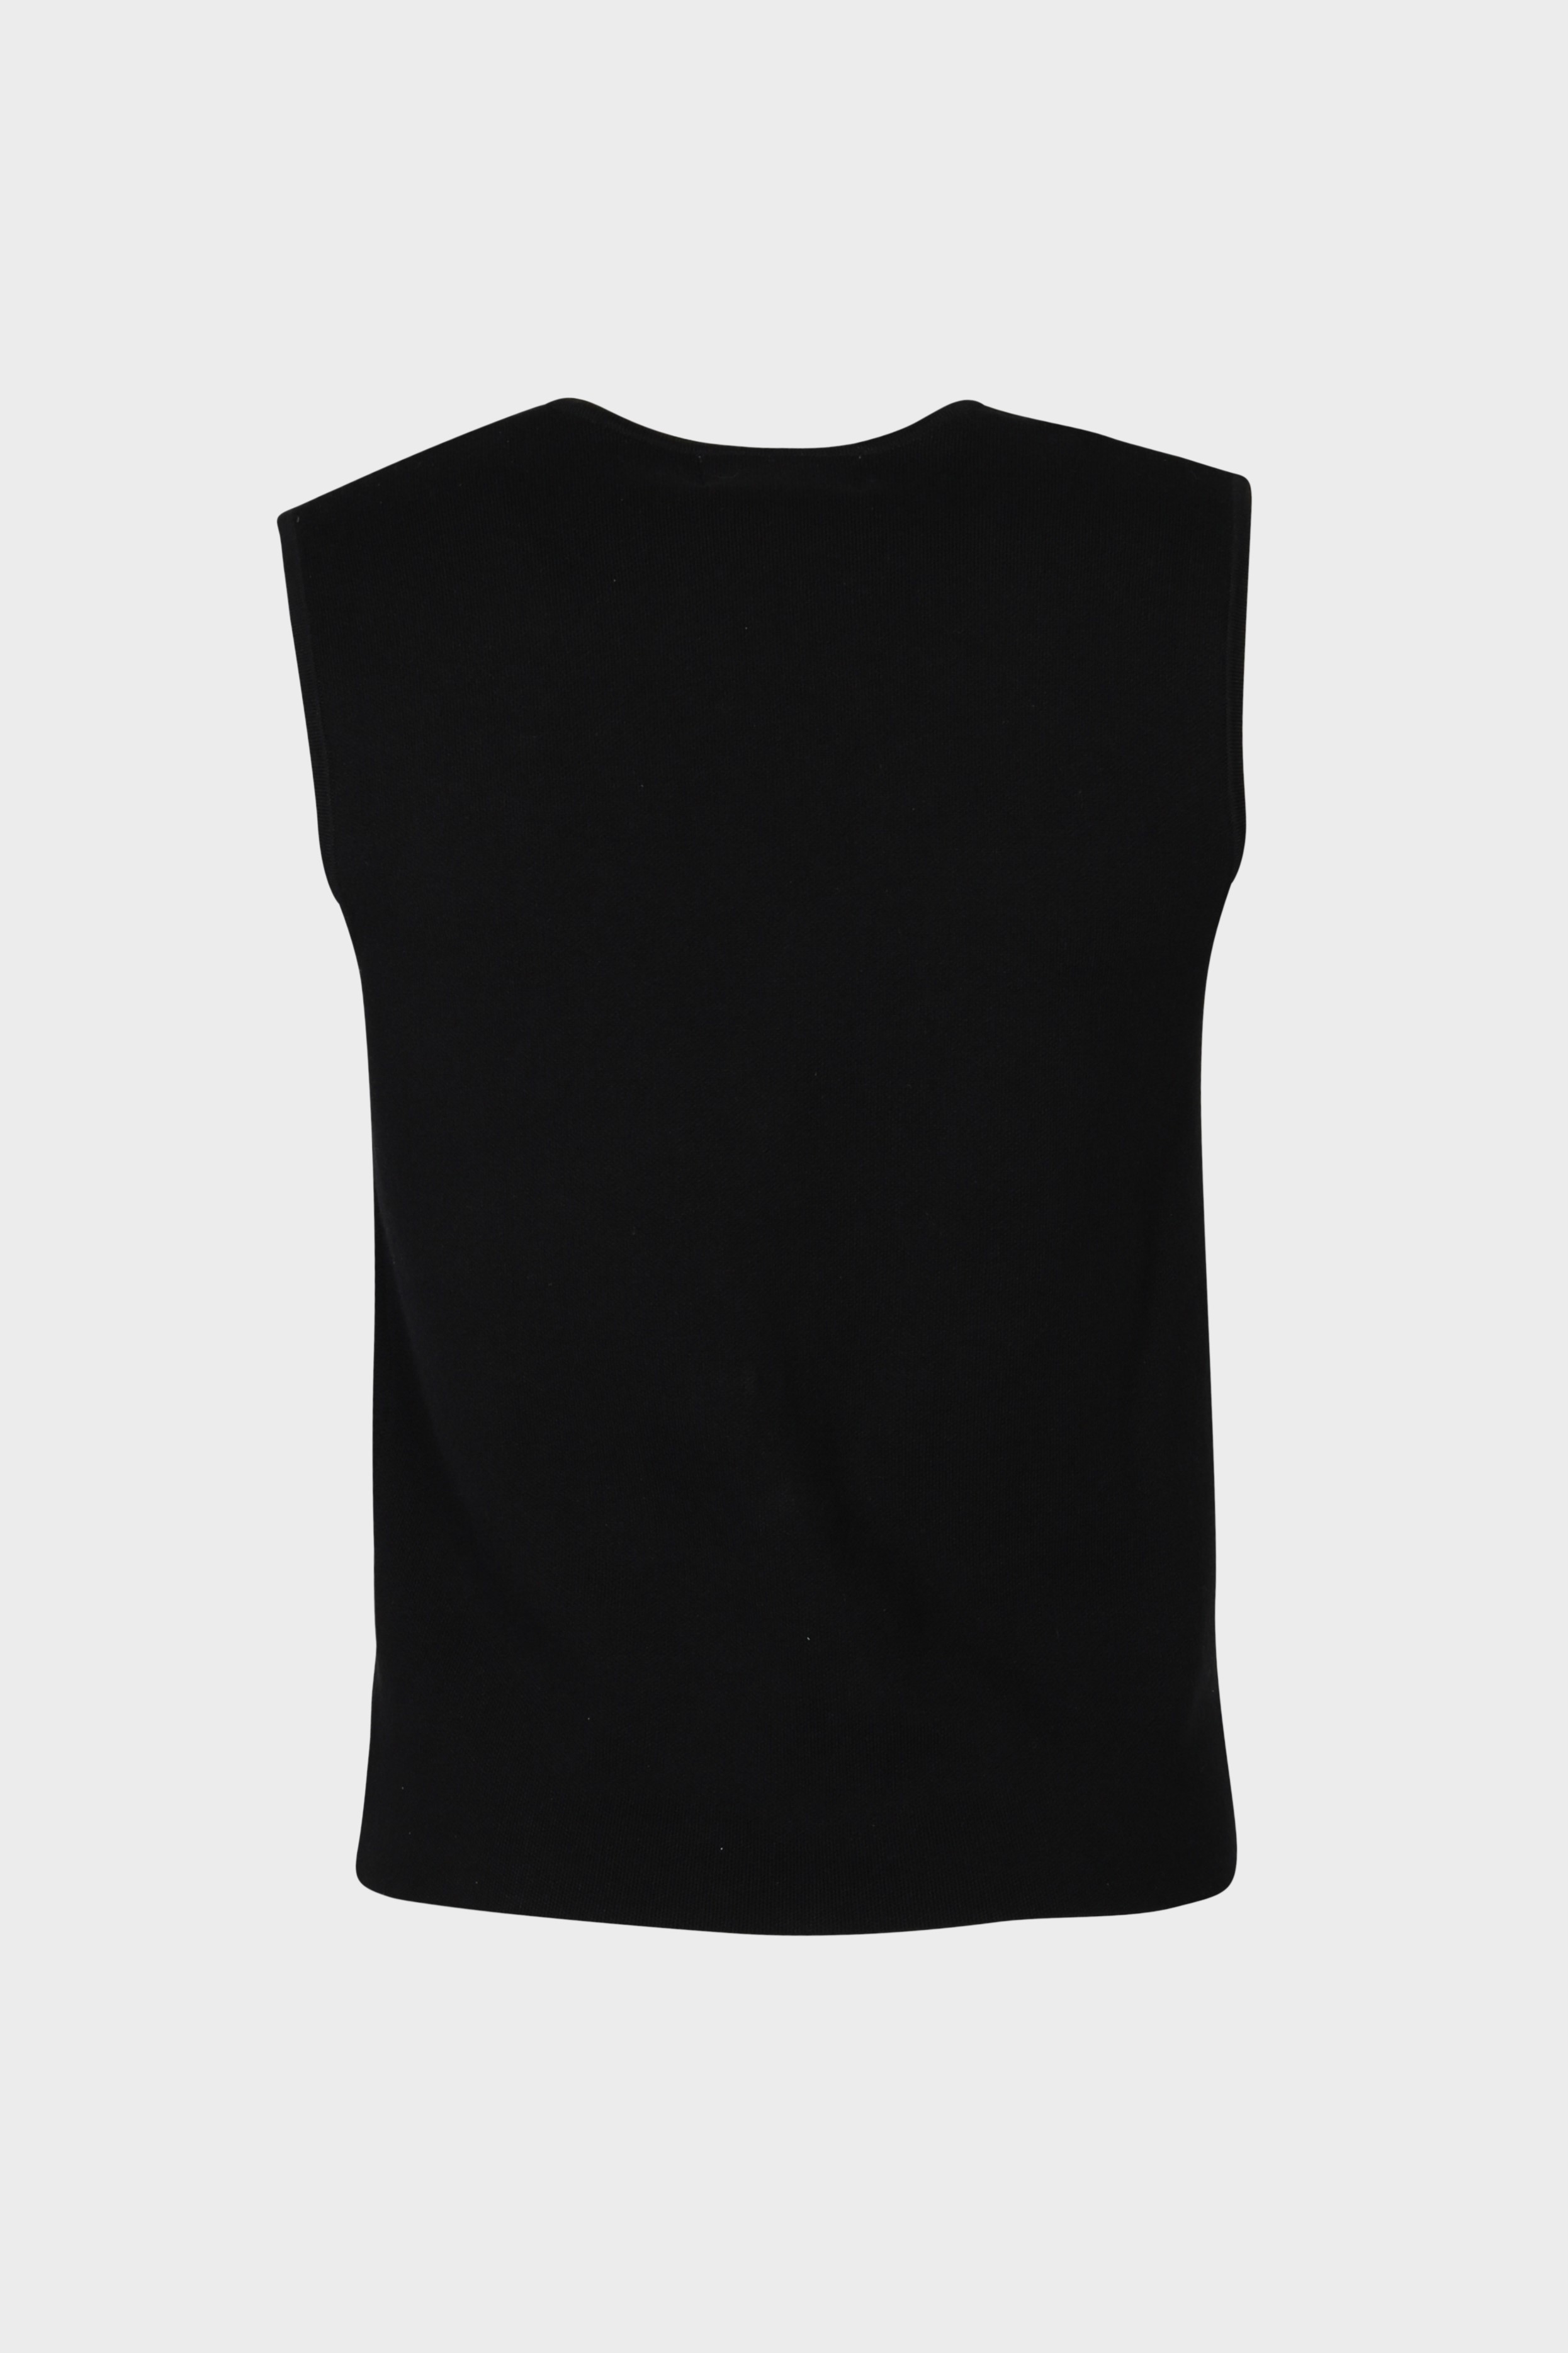 FLONA Cotton/ Cashmere Knit Vest in Black XS